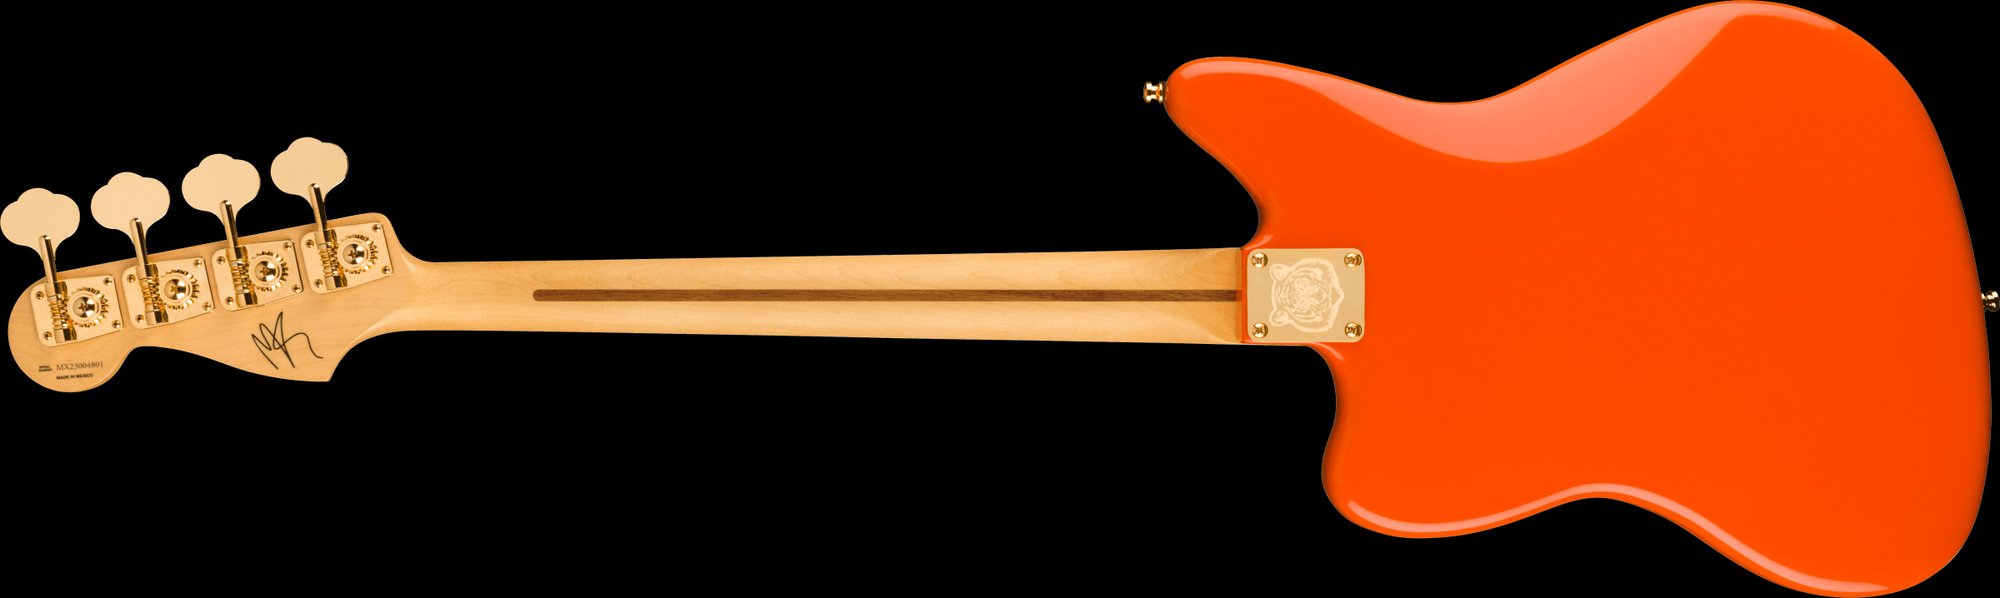 Limited Edition Mike Kerr Jaguar Bass Rosewood Fingerboard Tiger's Blood  Orange